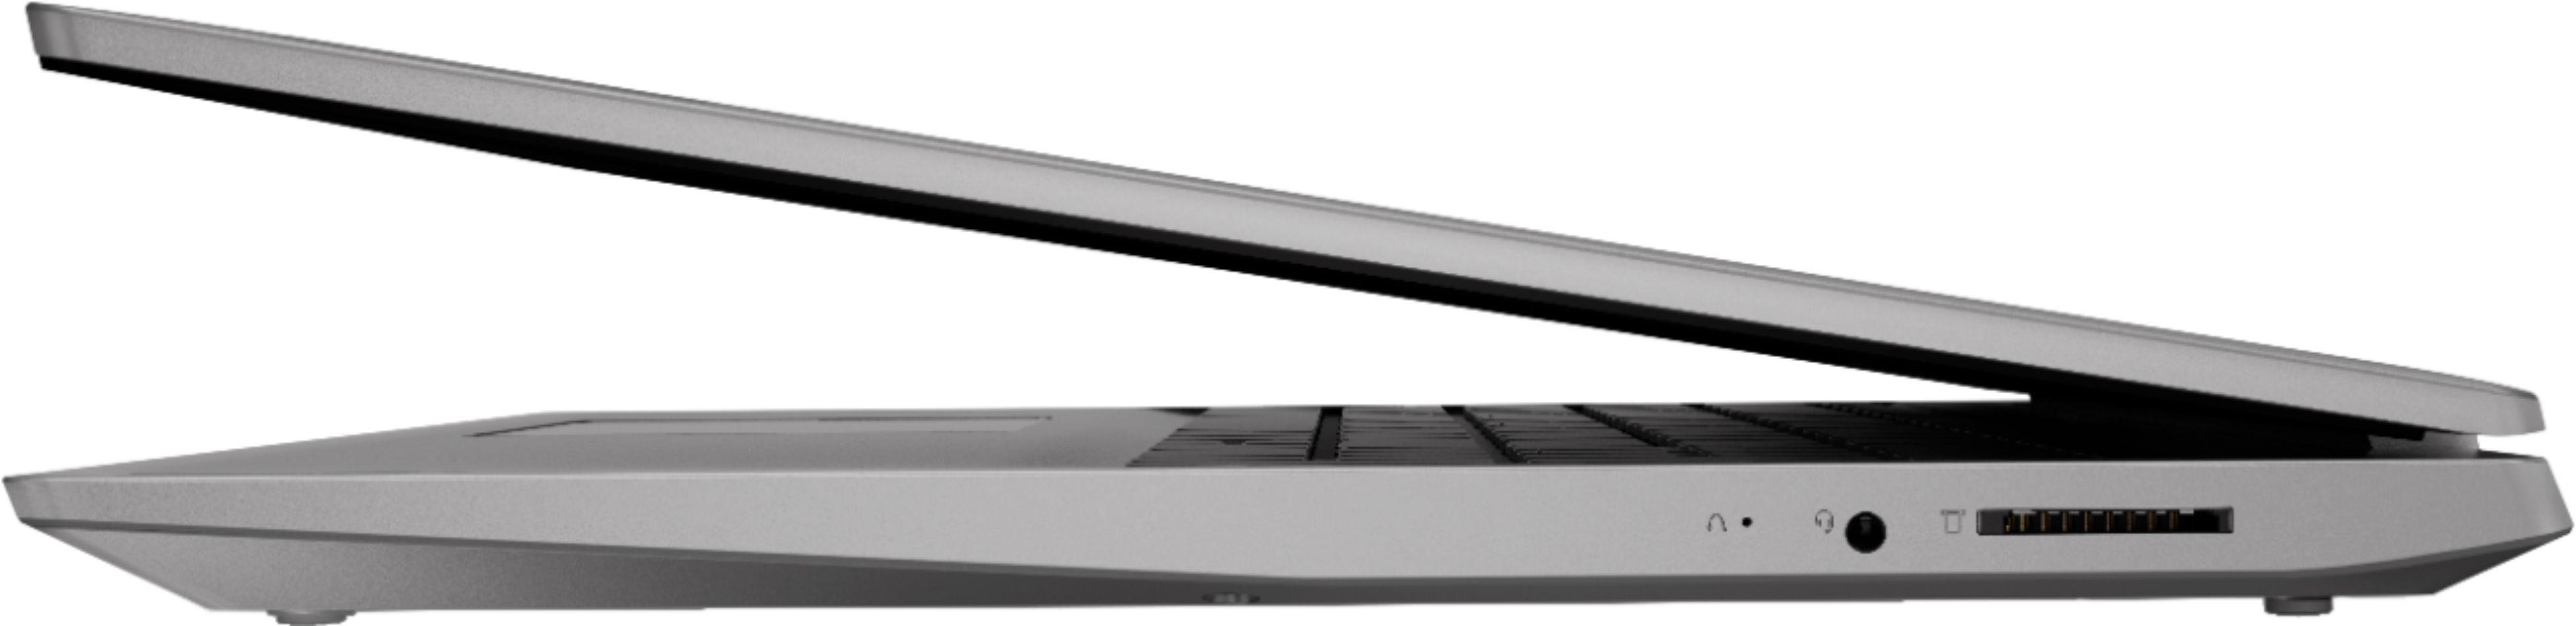 Best Buy: Lenovo IdeaPad S145 15.6